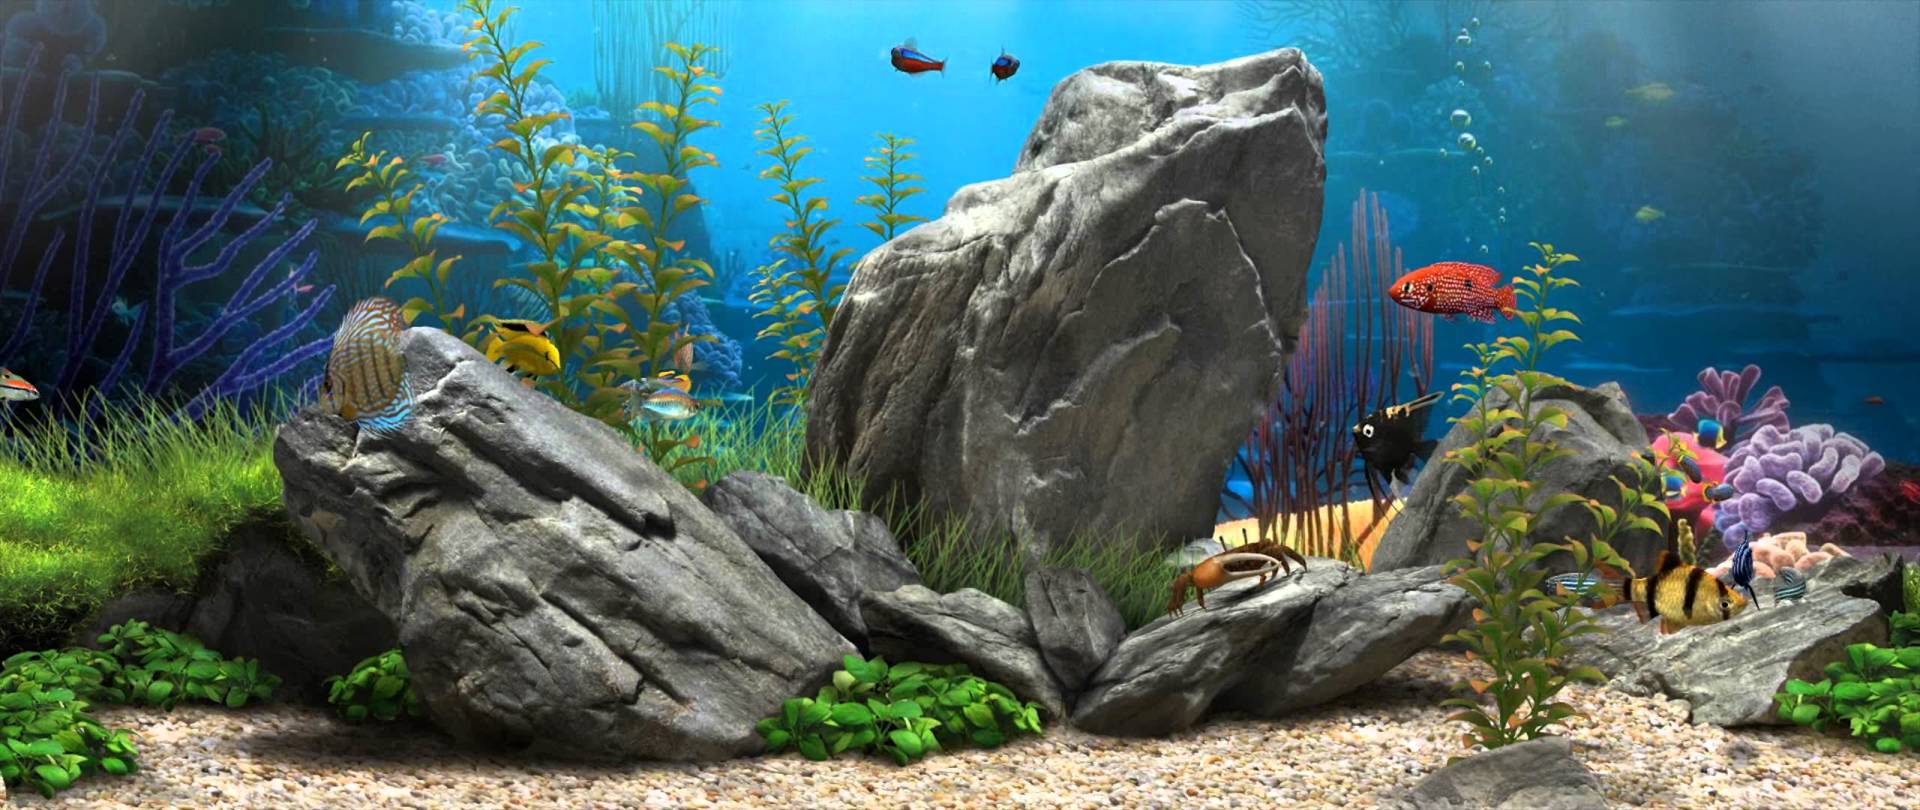 Exclusive Live Fish Aquarium Wallpaper For Desk